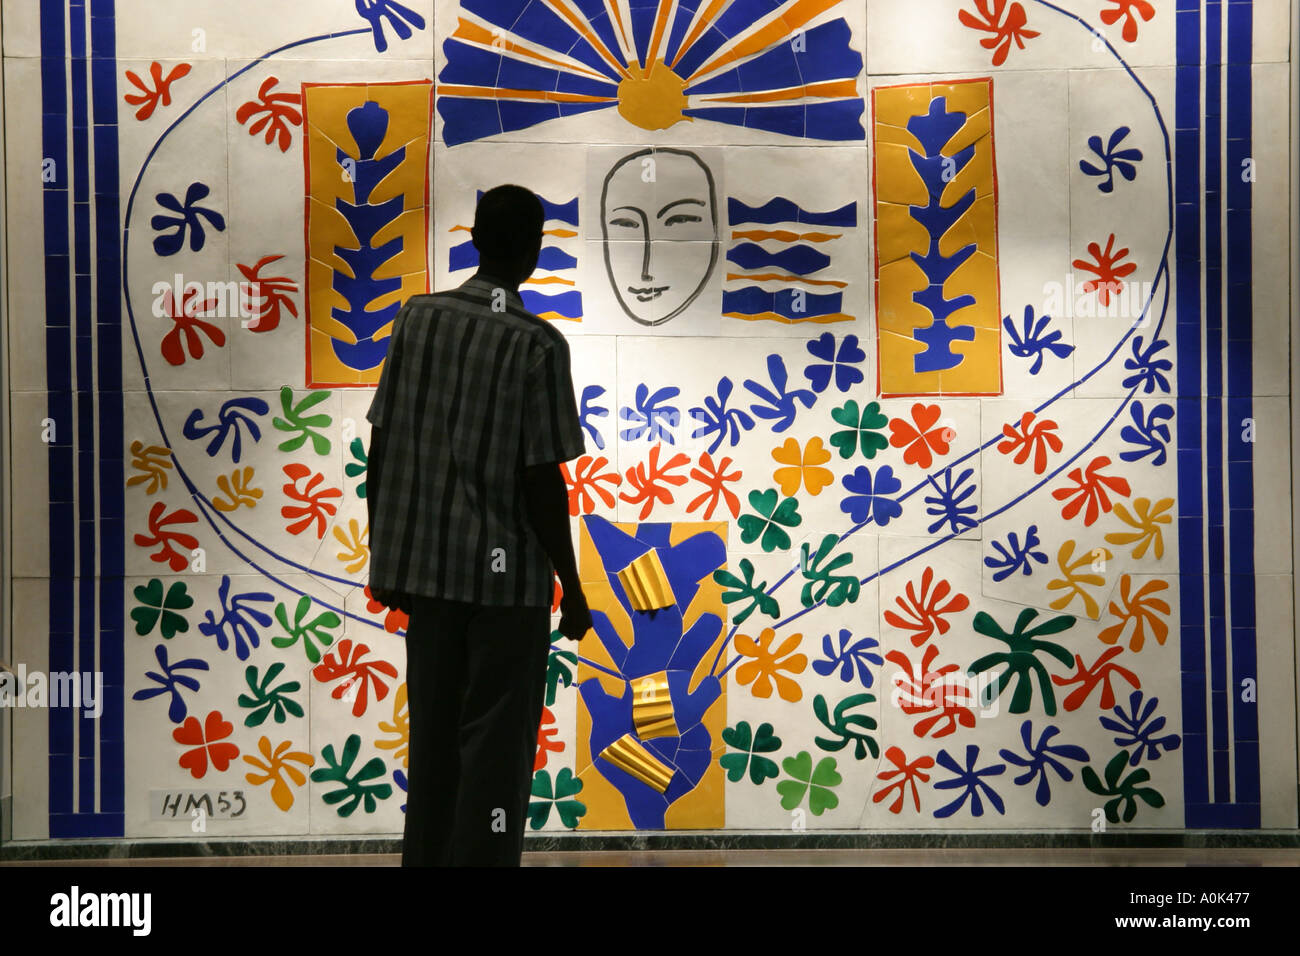 Ohio Toledo Museum of Art, mostra mostre collezione collezioni pittura dipinti, artista Henri Matisse artisti piastrelle murale, uomo uomini silhouette maschio l Foto Stock